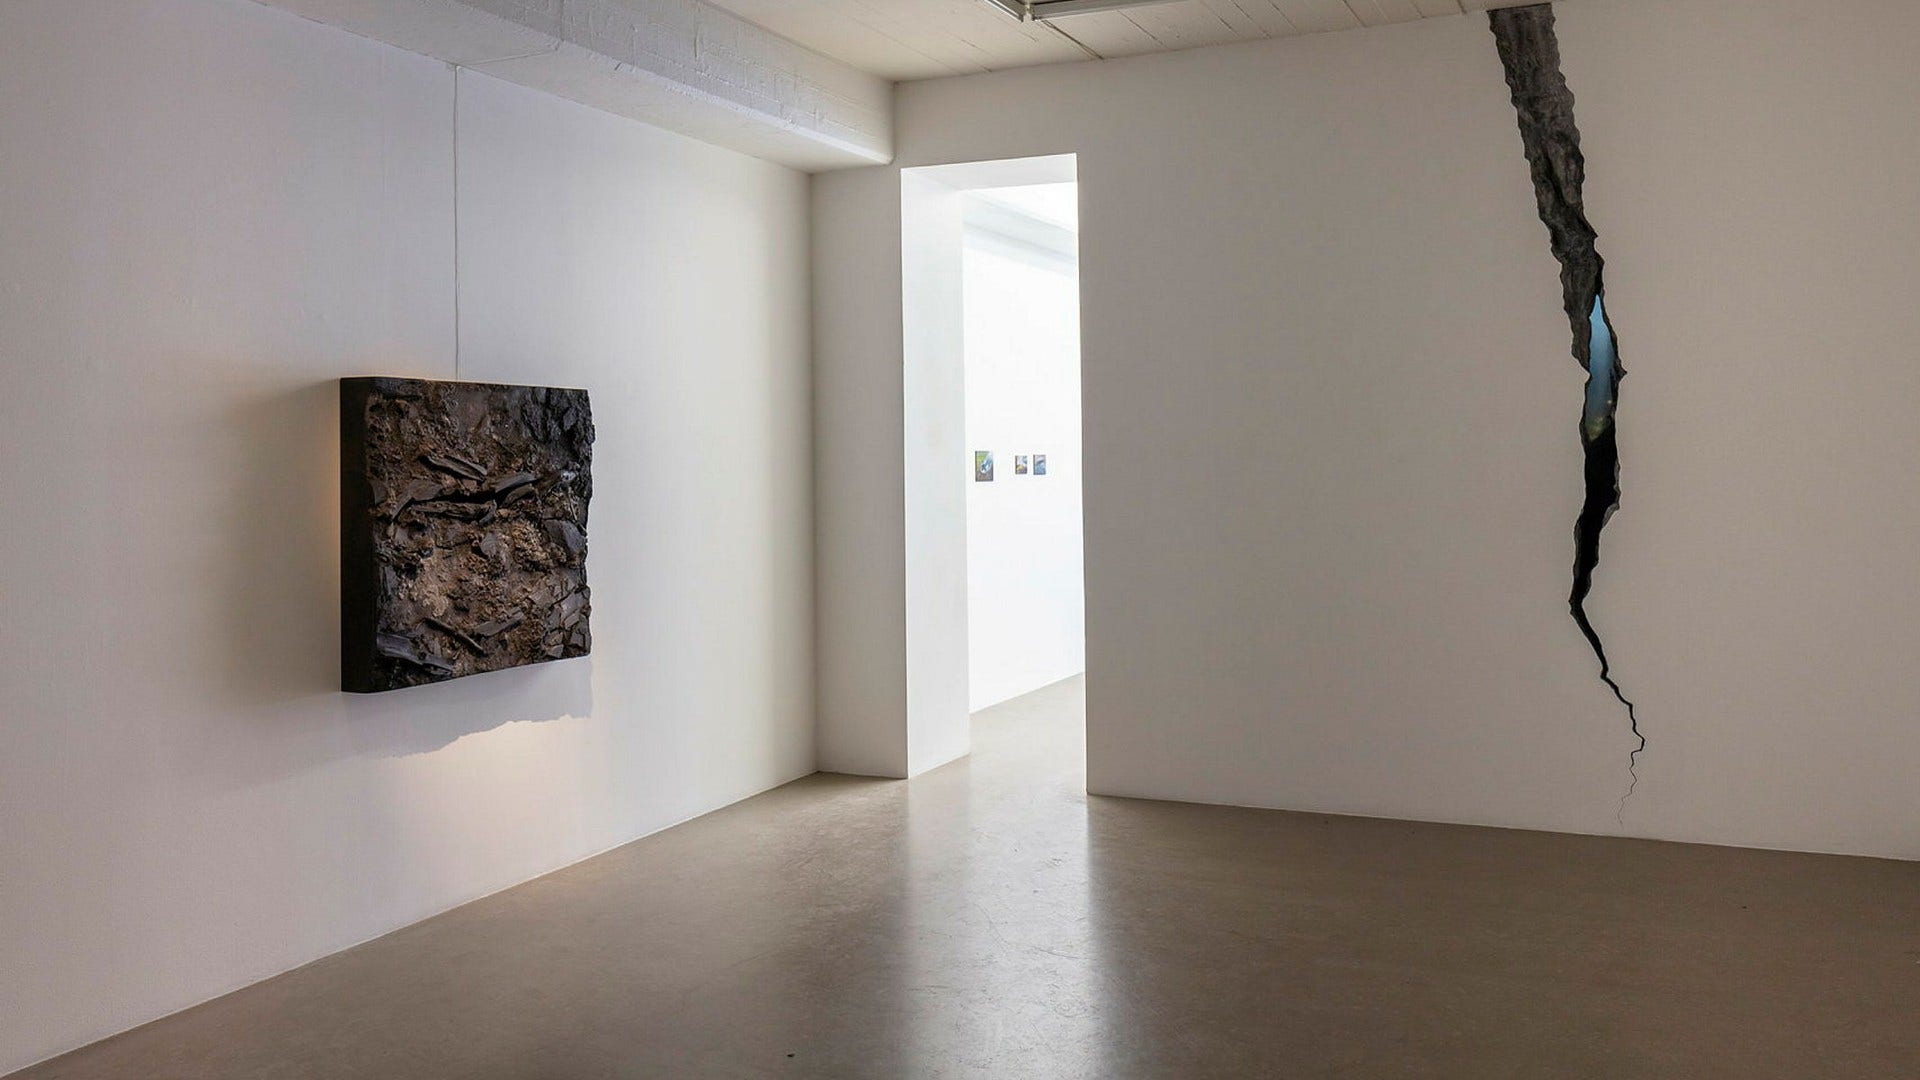 Vy från Oscar Furbackens utställning ”Eftereld” på SPGallery, med ”Reva” till höger¡.